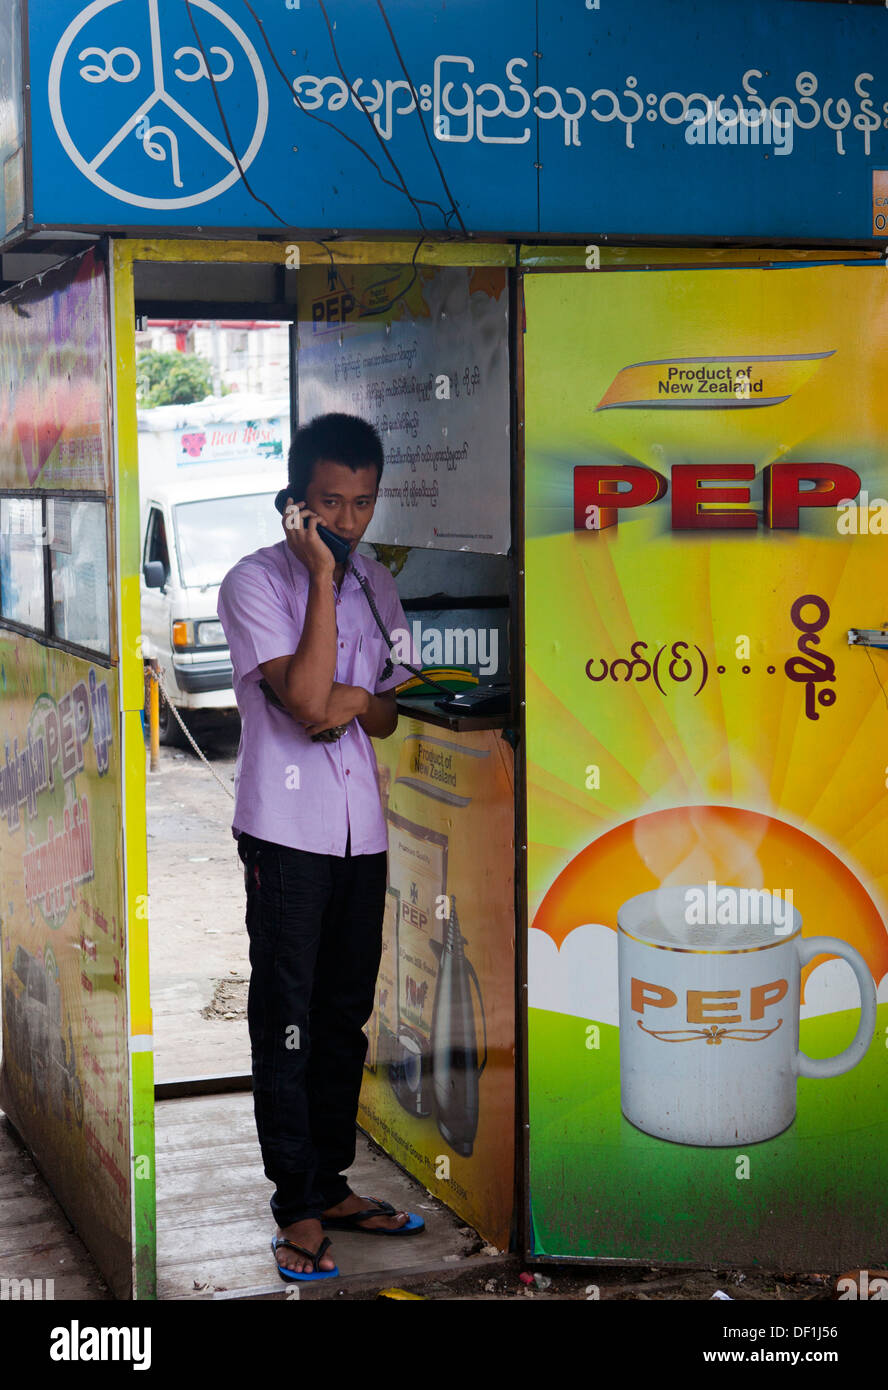 Un homme fait un appel à partir d'un téléphone shop à Yangon, Birmanie. Les téléphones cellulaires ne sont pas encore largement utilisées. Banque D'Images